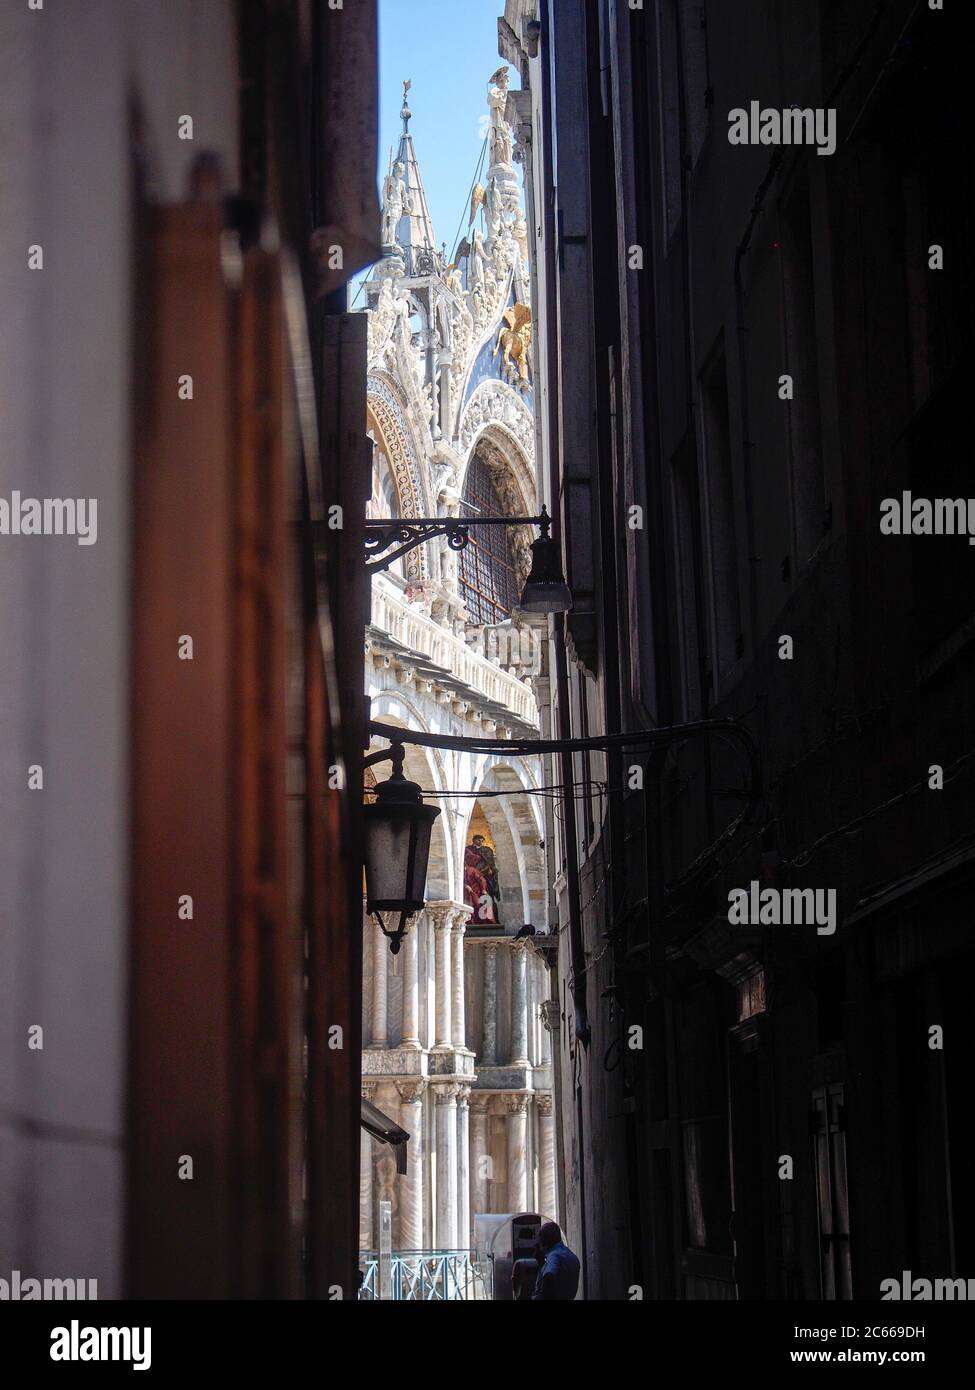 San Marco, Venise, Italie - juillet 2020. Peu de touristes sont de retour dans Venise déserte après le confinement de covid-19, les célèbres bars et magasins fermés. Banque D'Images